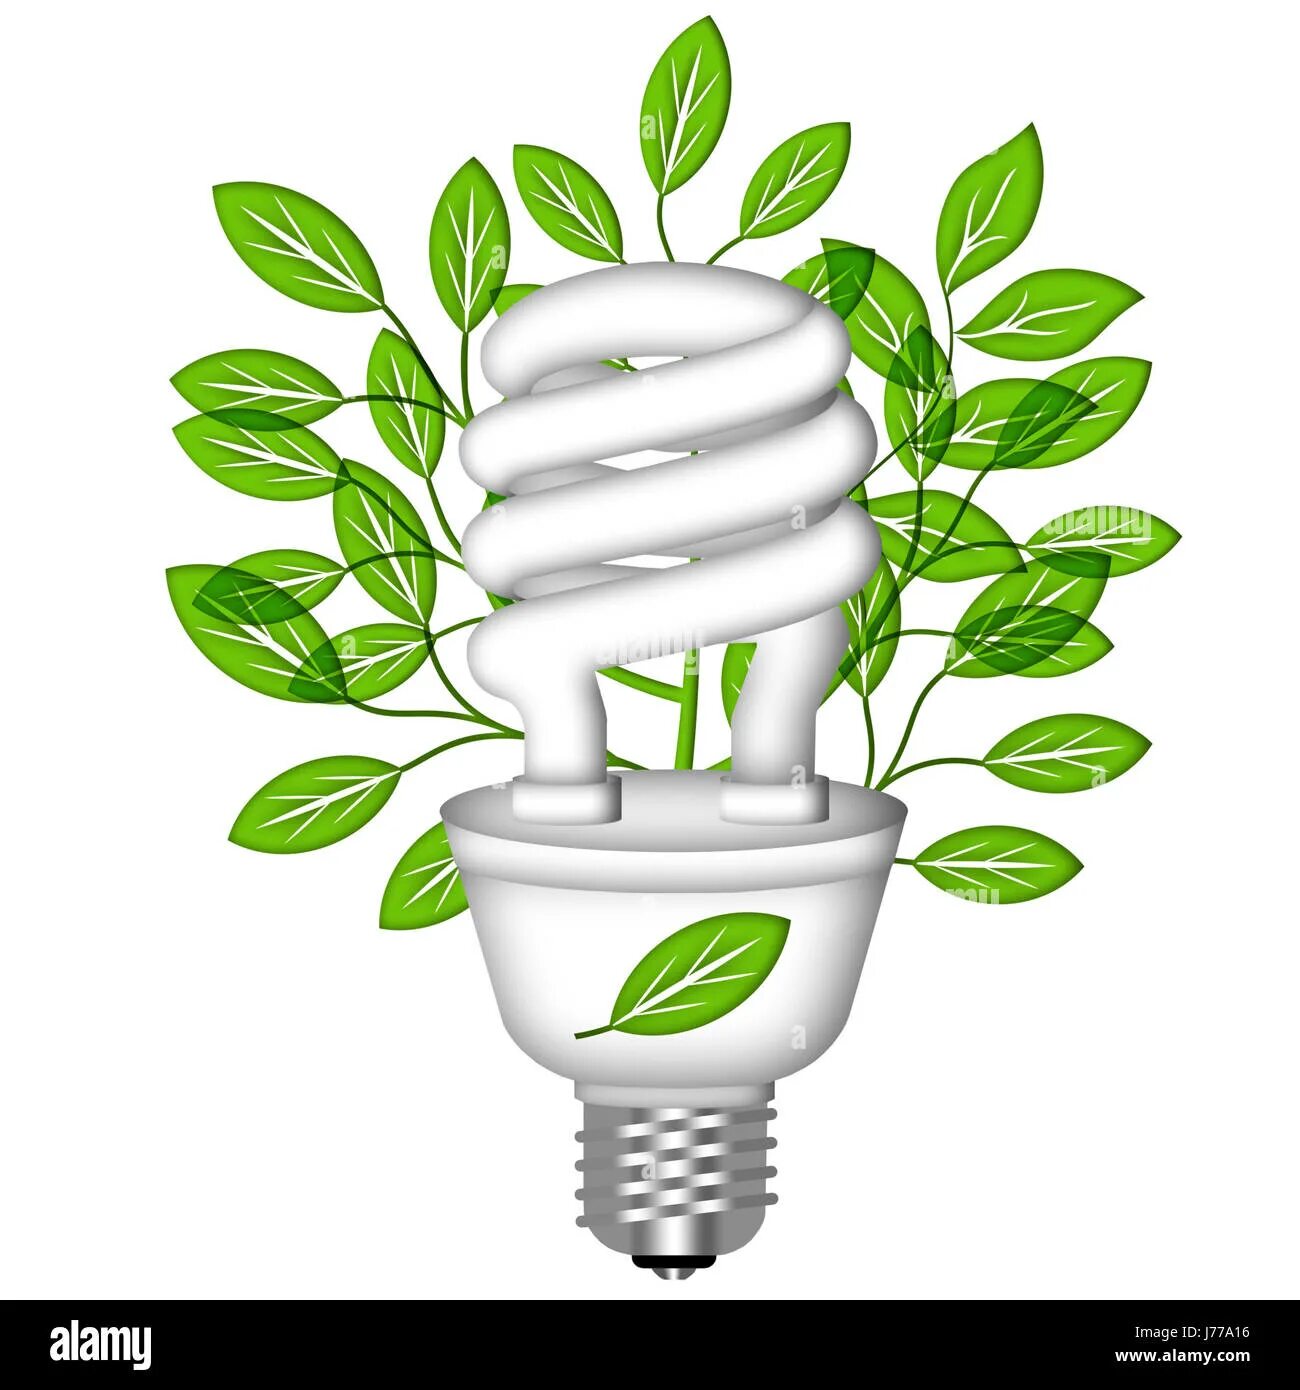 Энергосберегающая лампа рисунок. Рисунок на тему энергосбережение. Лампочка энергосбережения для детей. Экология и энергосбережение. Лампочка экология.